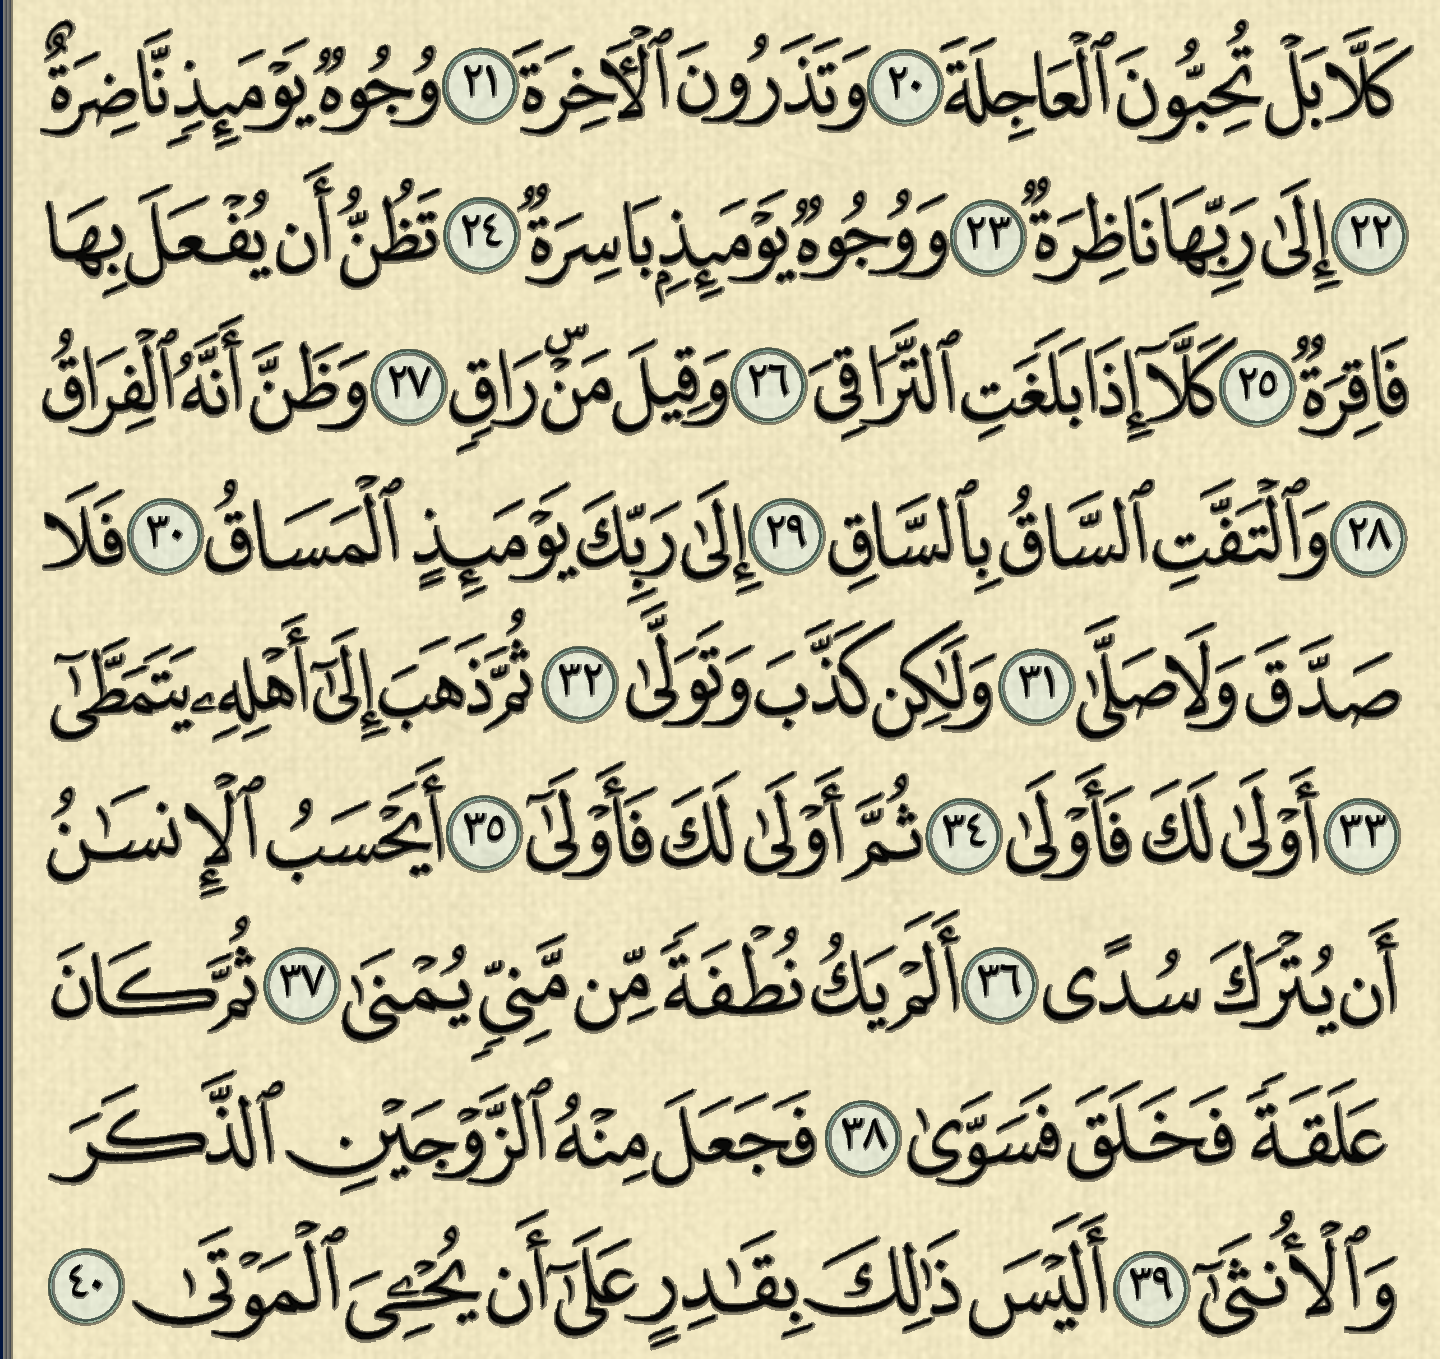 شرح وتفسير سورة القيامة surah Al-Qiyama,